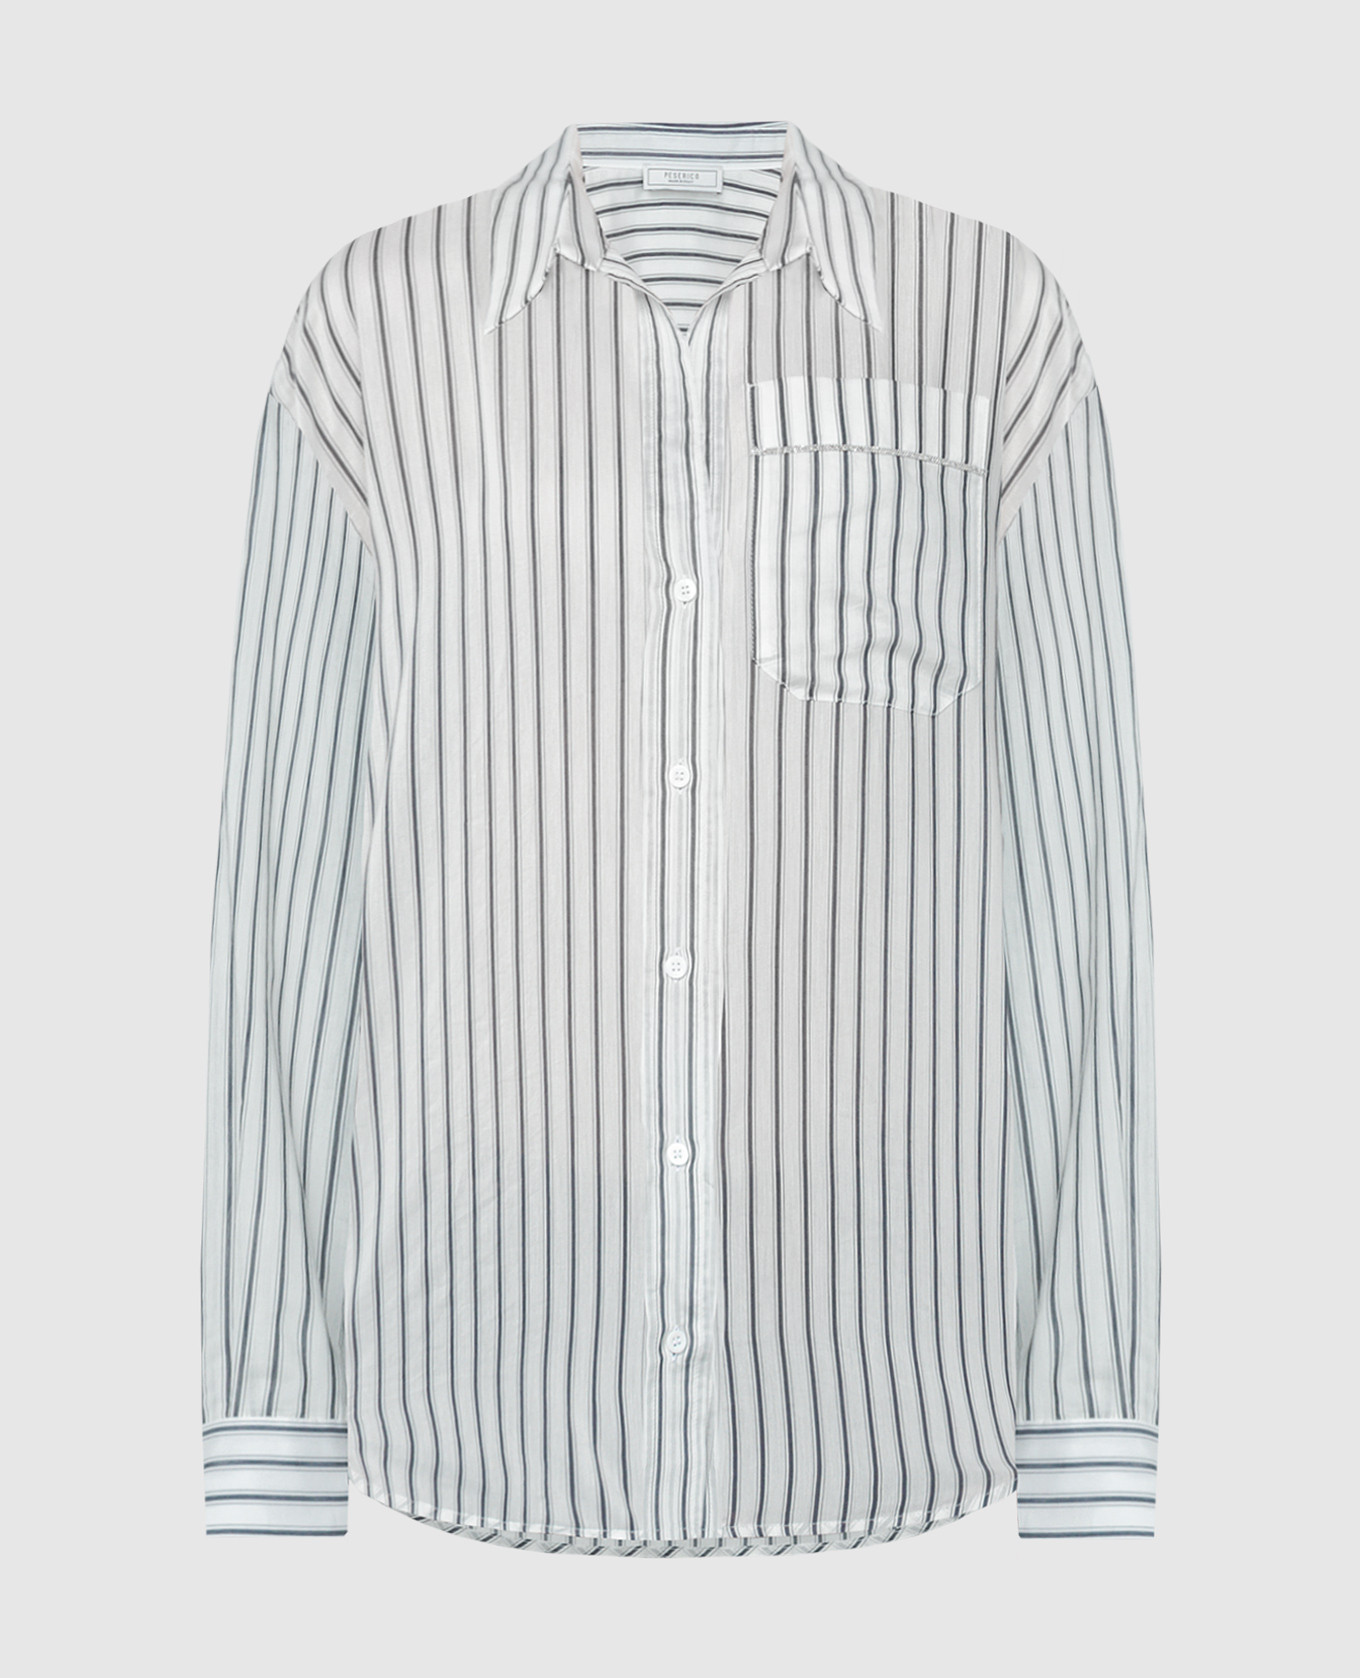 White striped shirt with monil chain